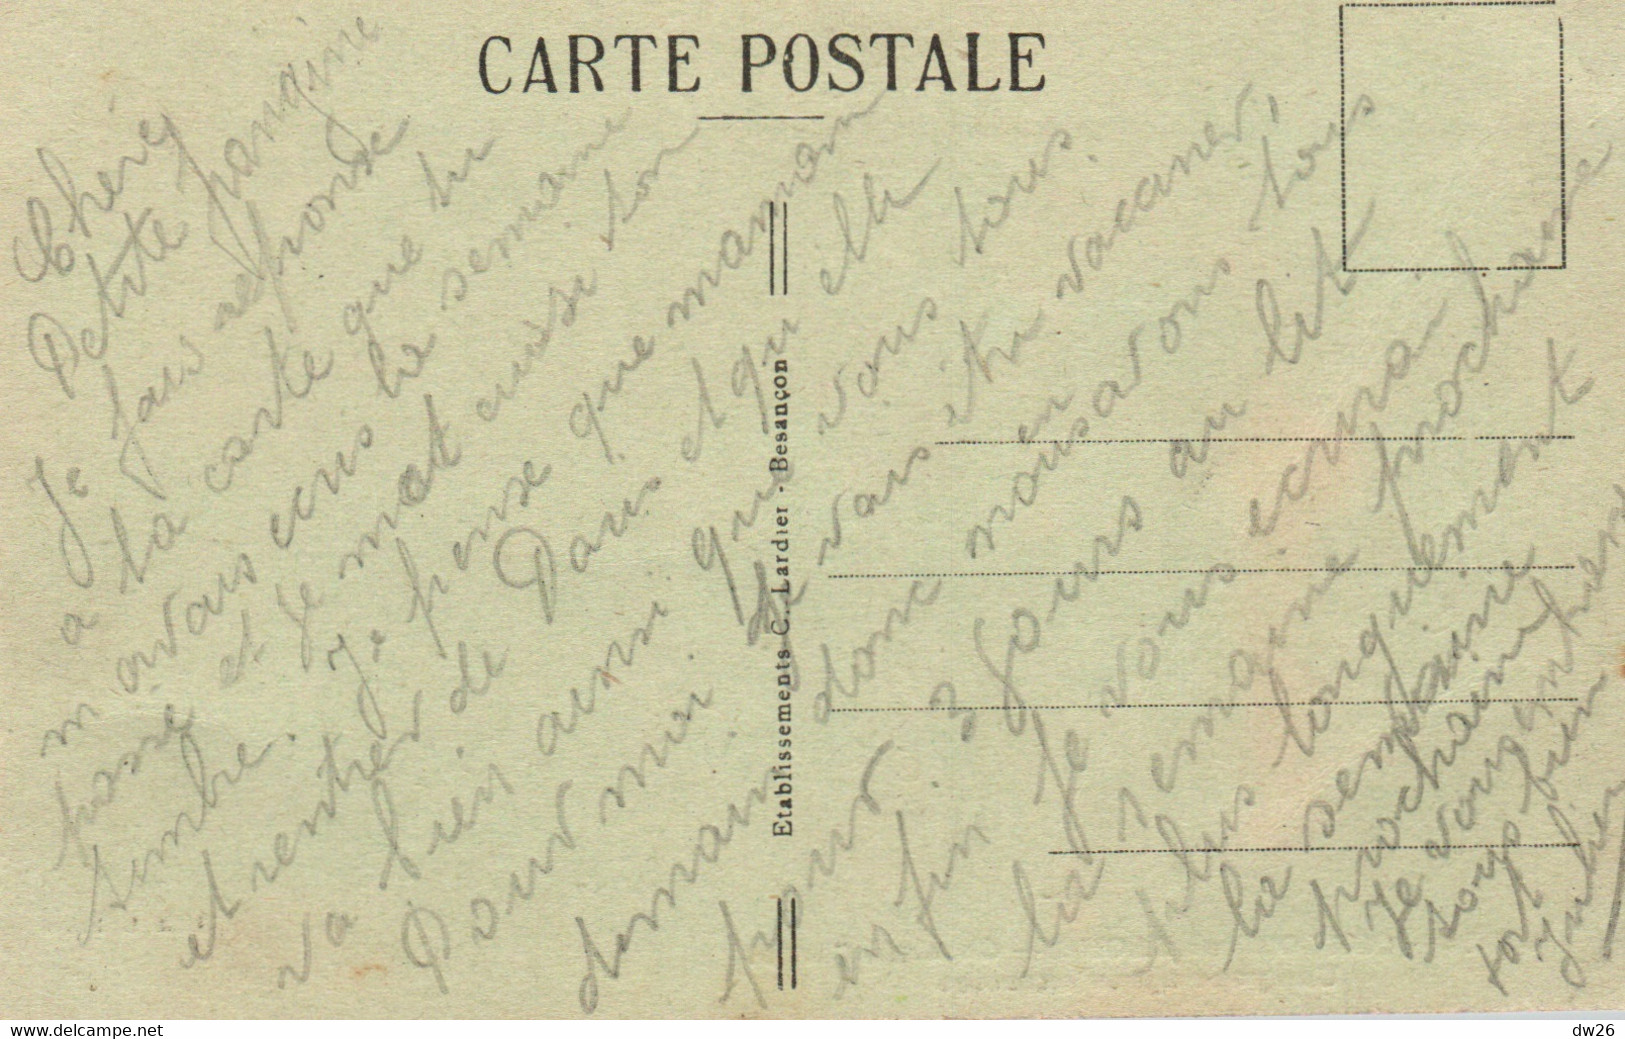 Chalon-sur-Saône - Caserne Carnot - Une Pose Après L'exercice - Edition Lardier - Carte C.L.B. N° 23924 - Barracks